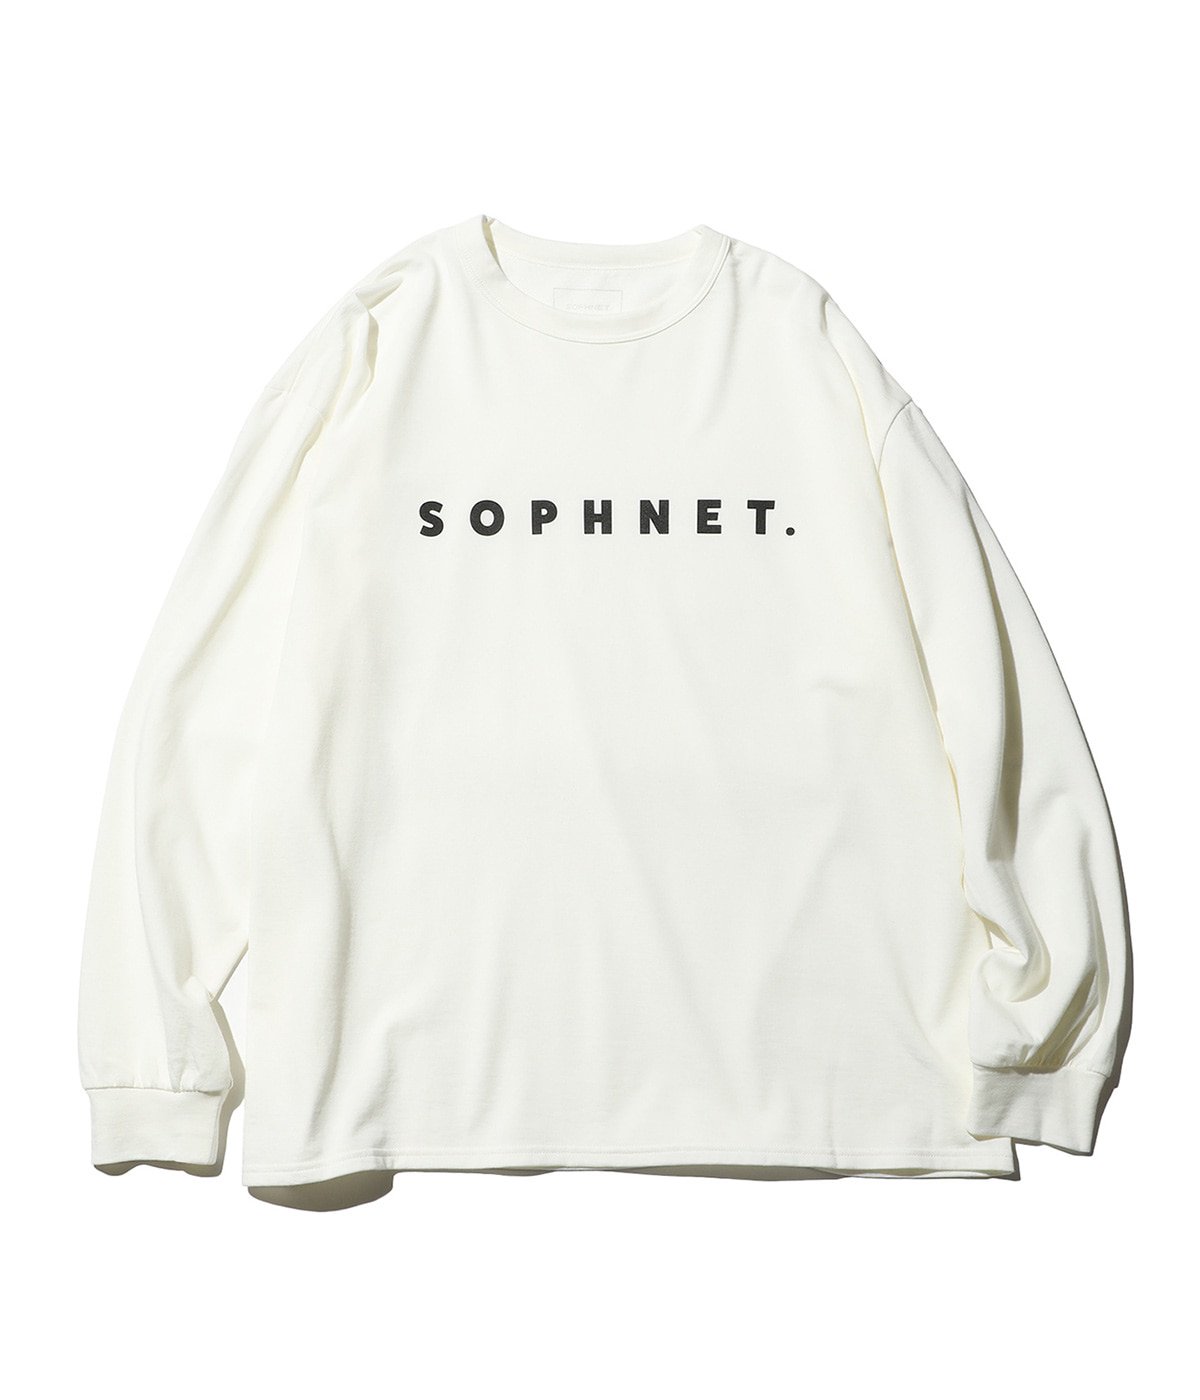 SOPHNET. LOGO L S BAGGY TEE - Tシャツ